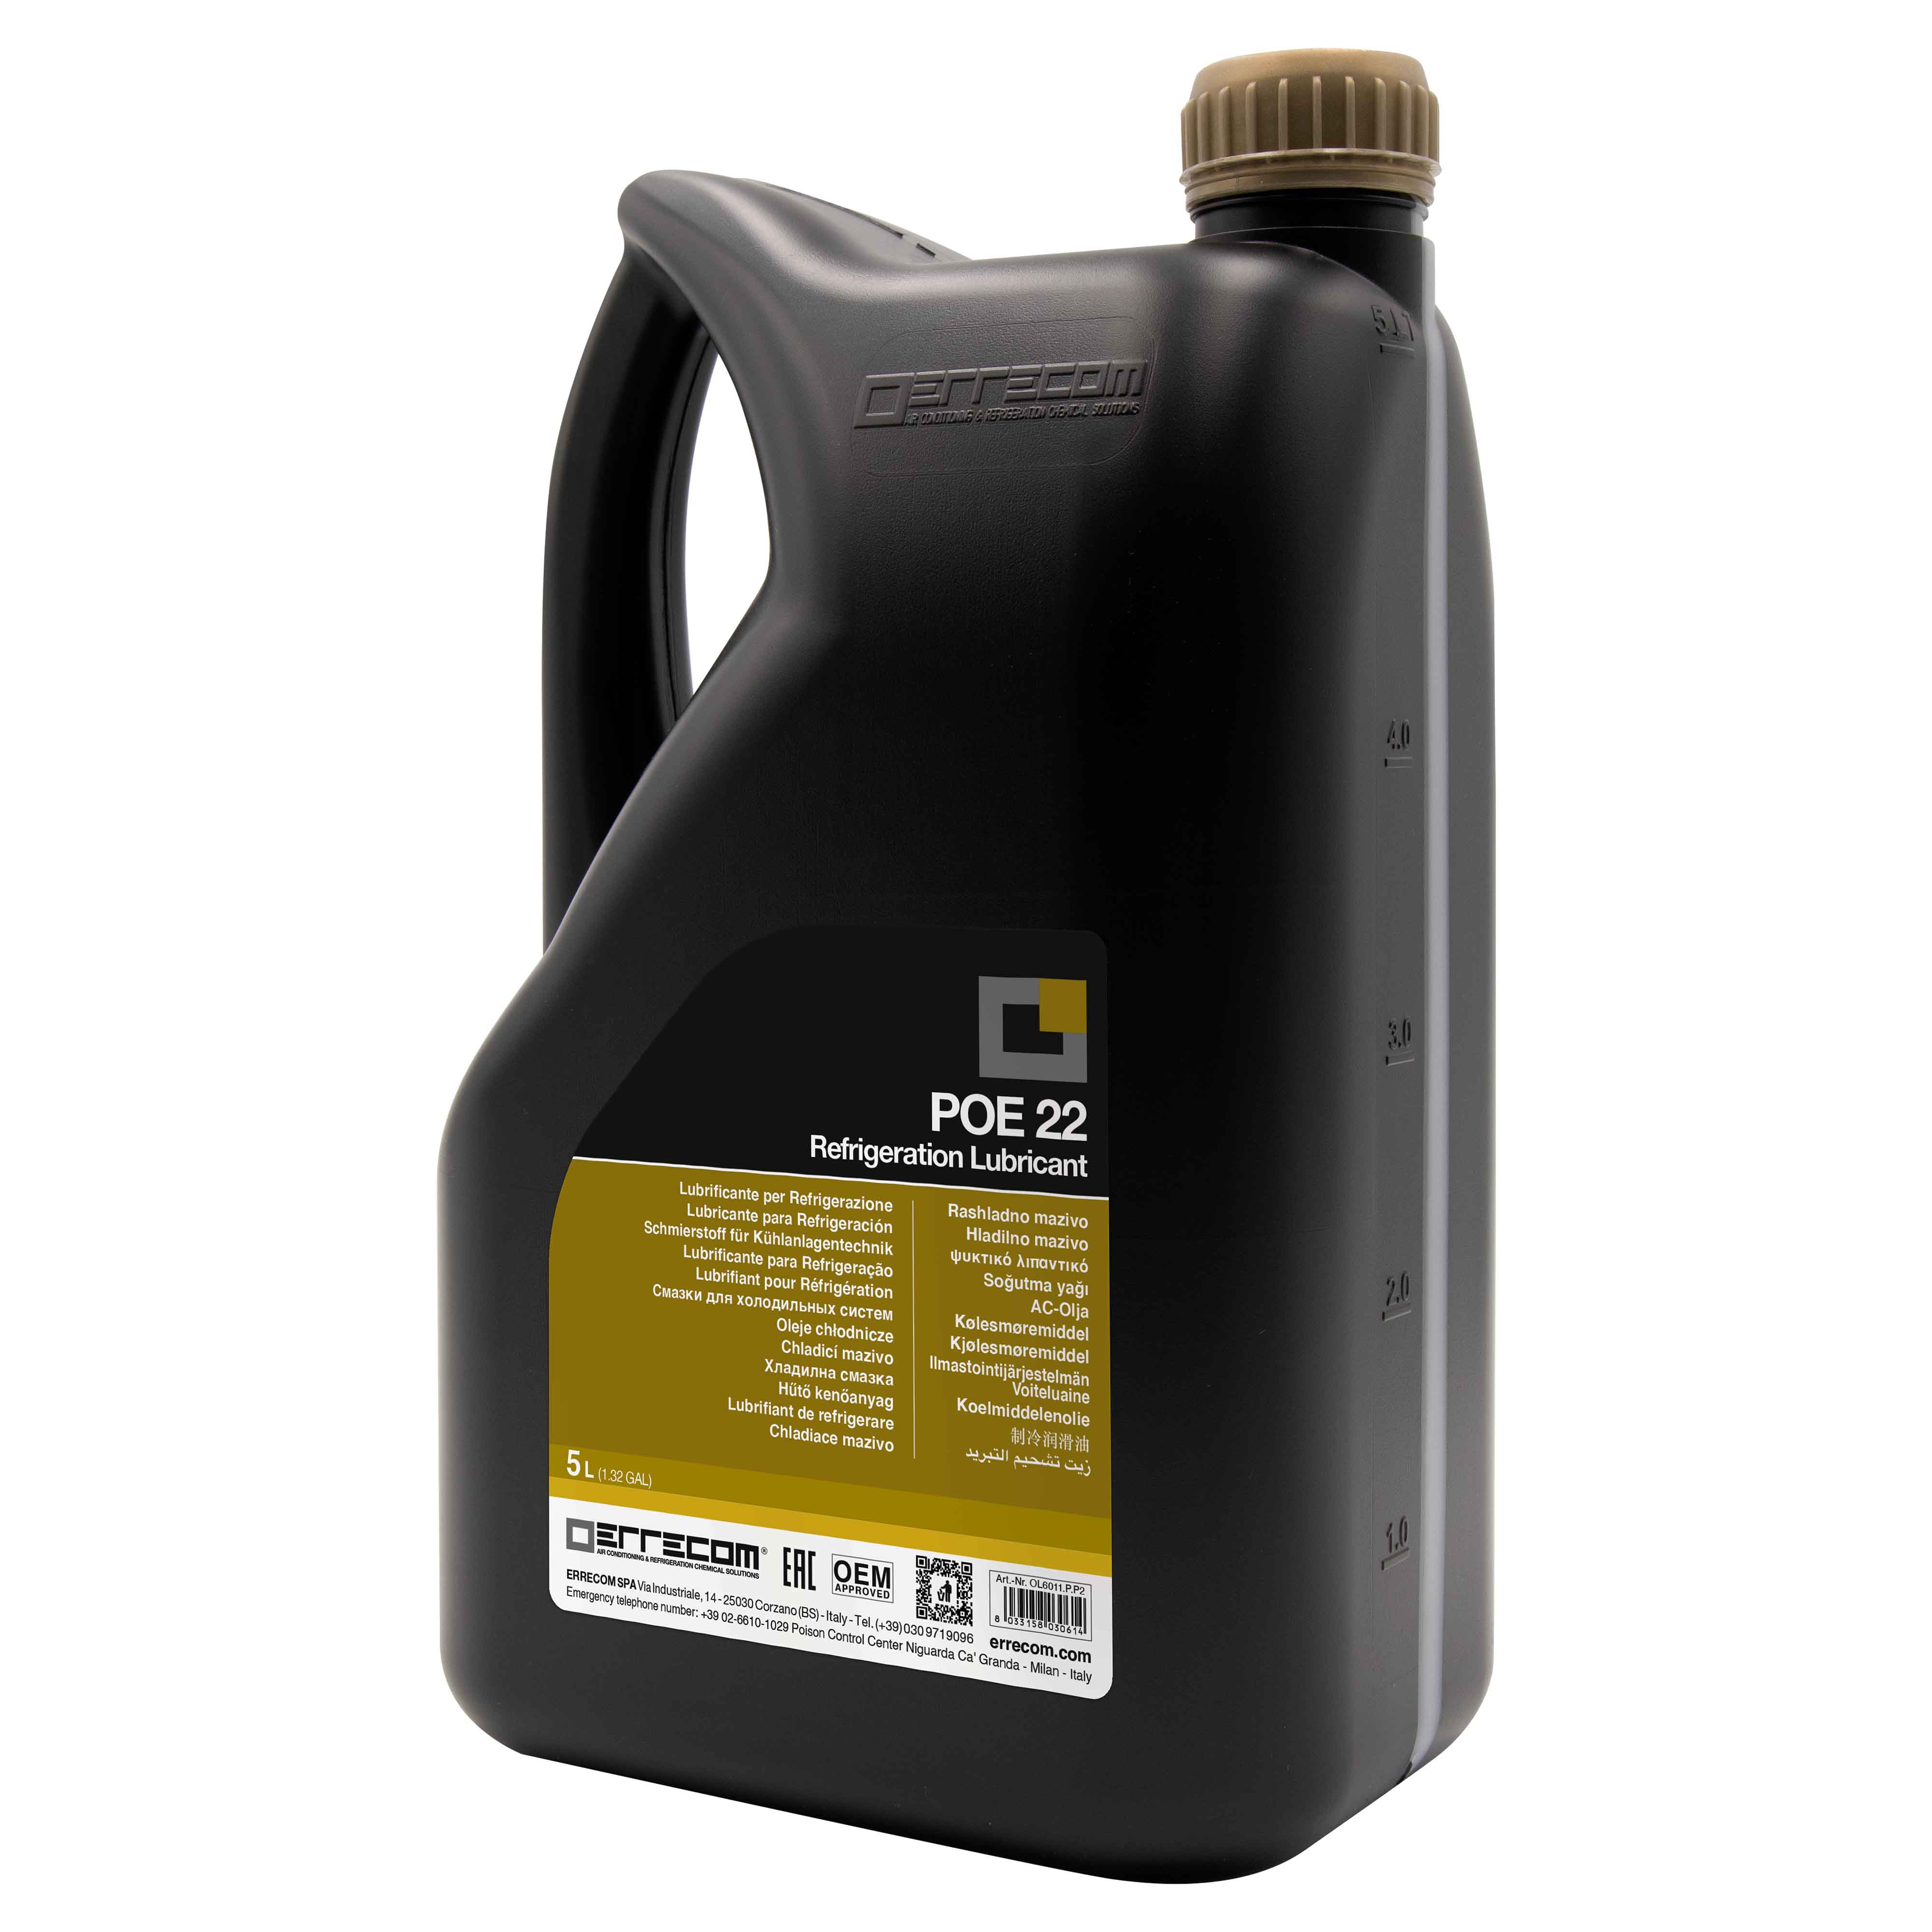 Olio lubrificante R&AC Polyol Estere (POE) Errecom 22 - Tanica in Plastica da 5 lt.